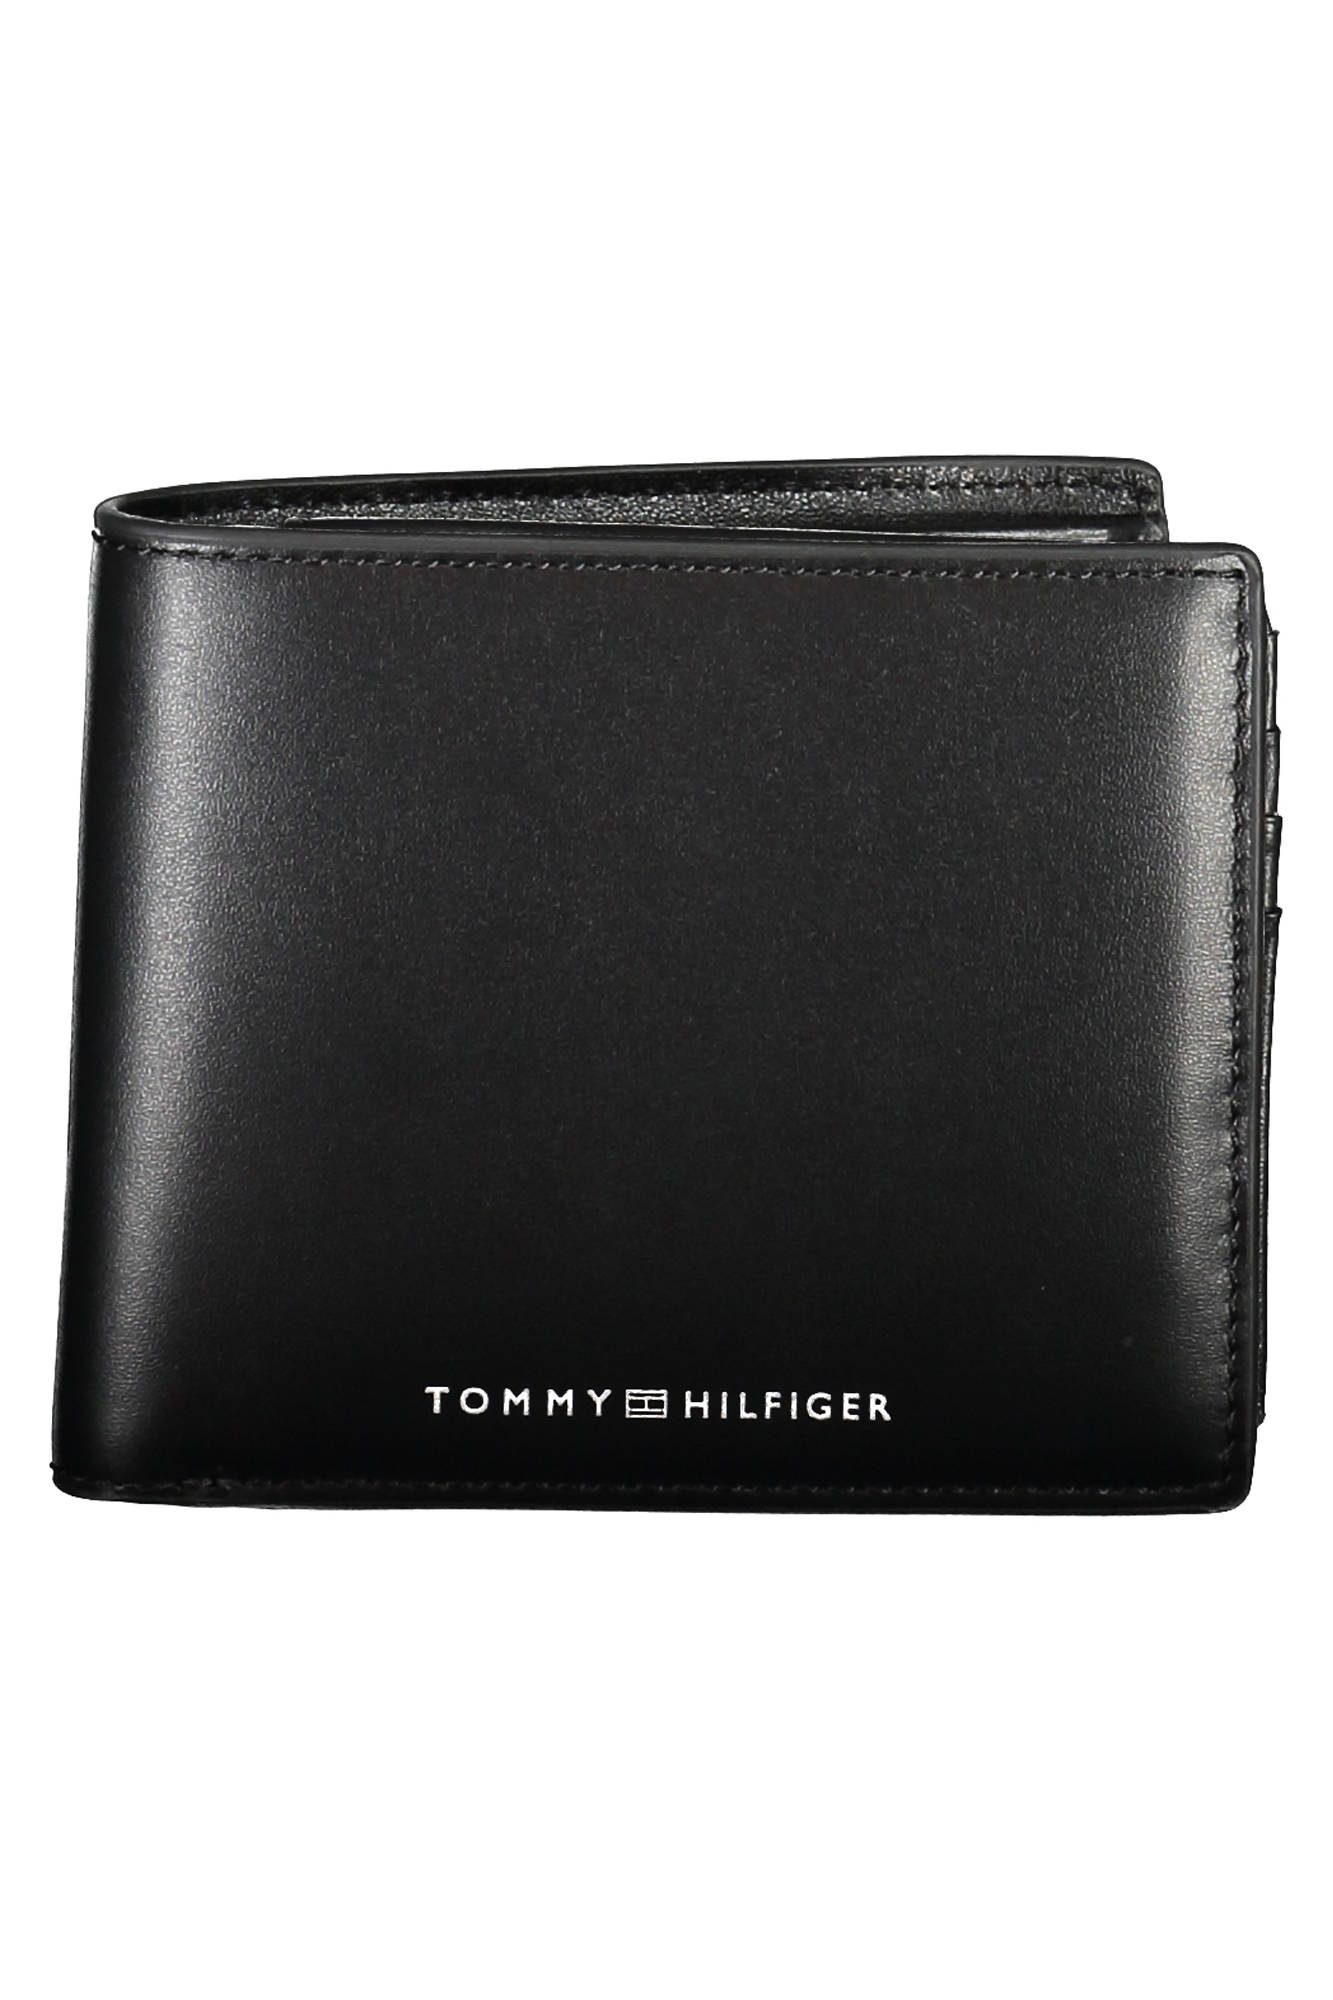 TOMMY HILFIGER Black Wallet Fashion Brands Outlet